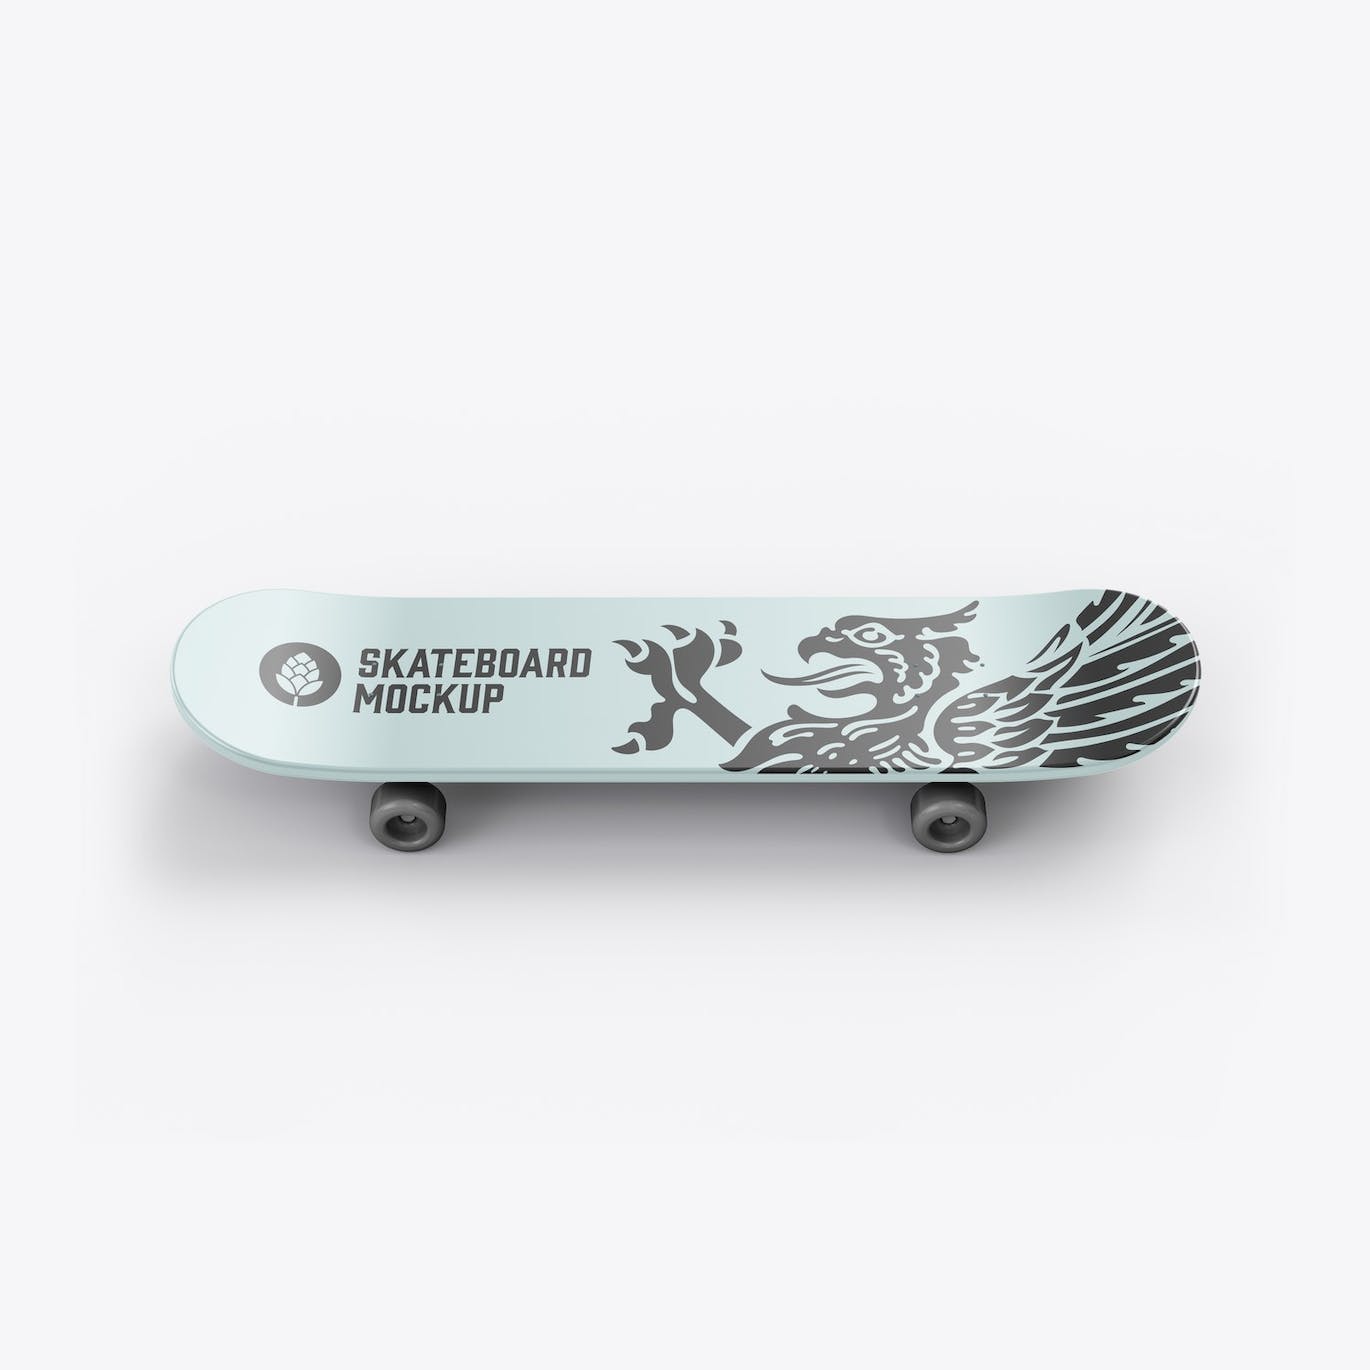 骑行滑板品牌设计样机 Skateboard Mockup 样机素材 第8张